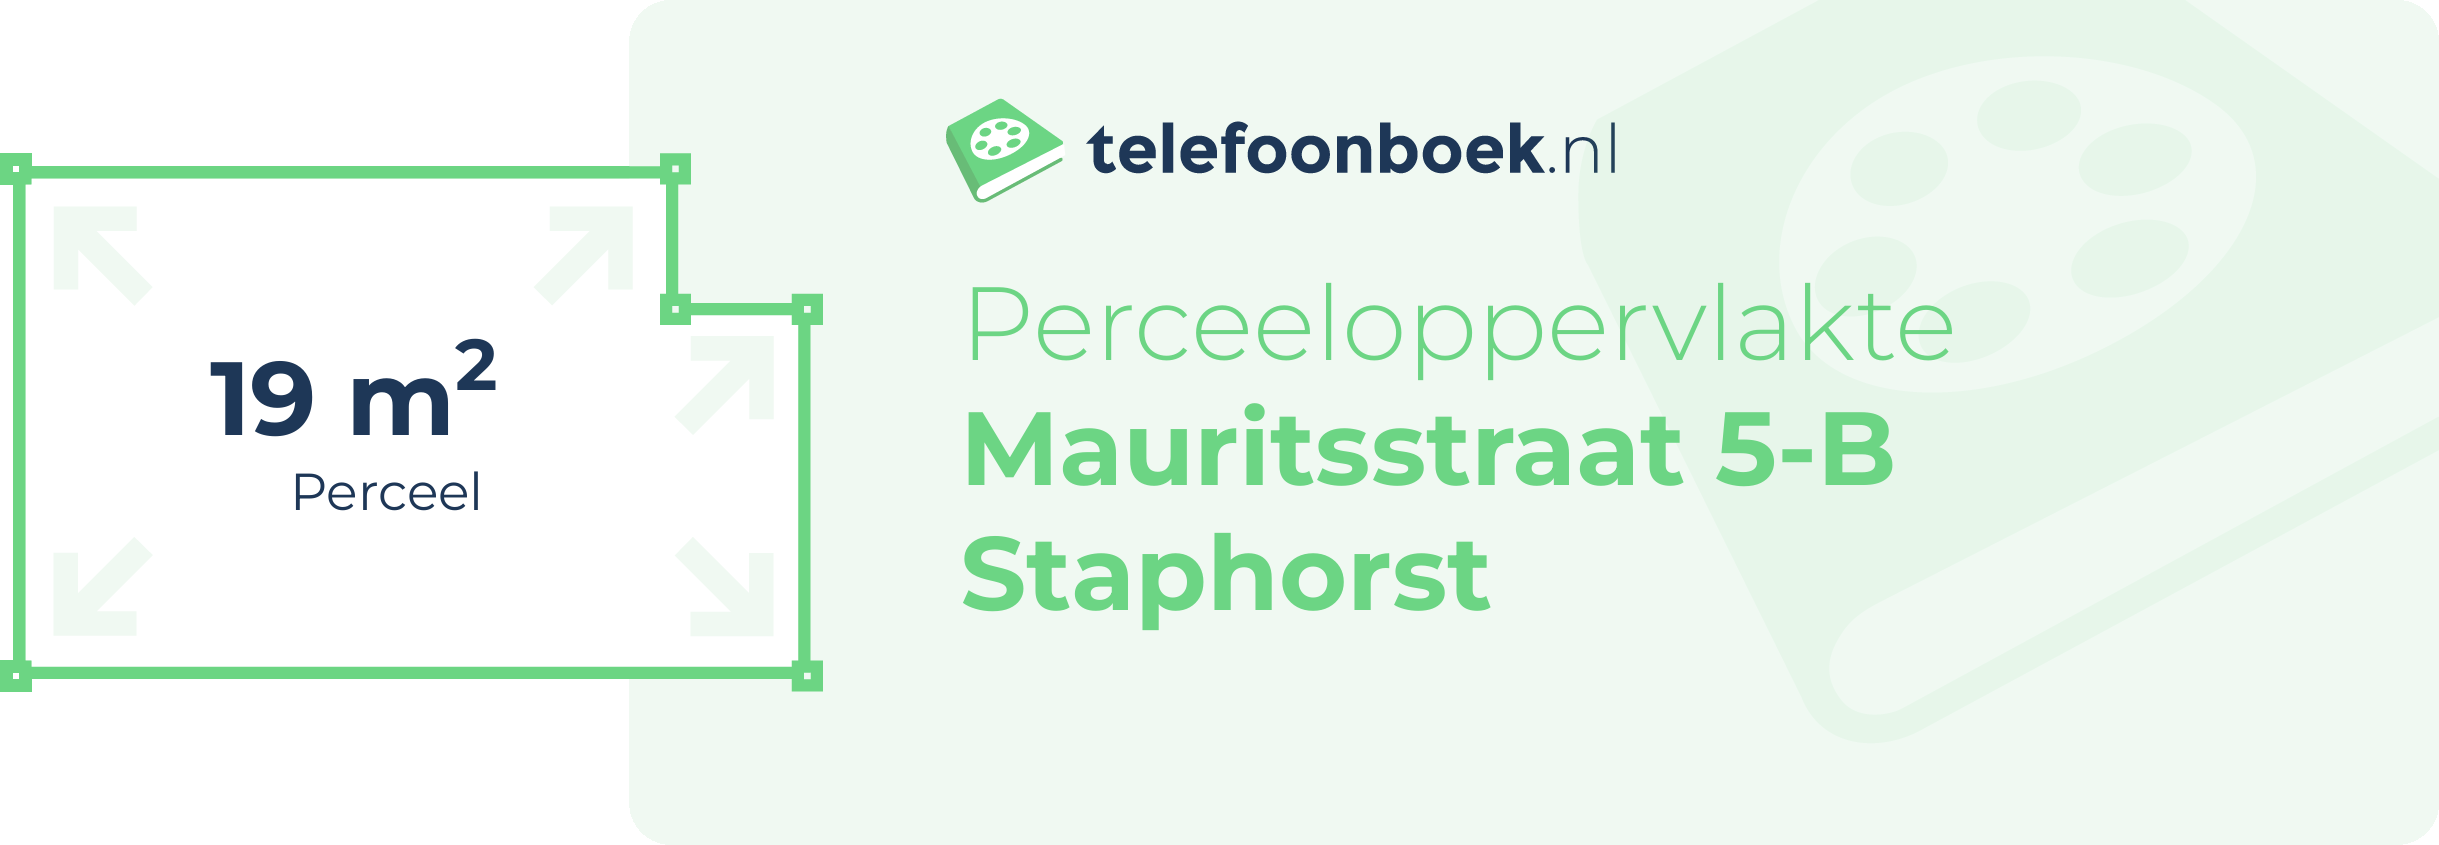 Perceeloppervlakte Mauritsstraat 5-B Staphorst